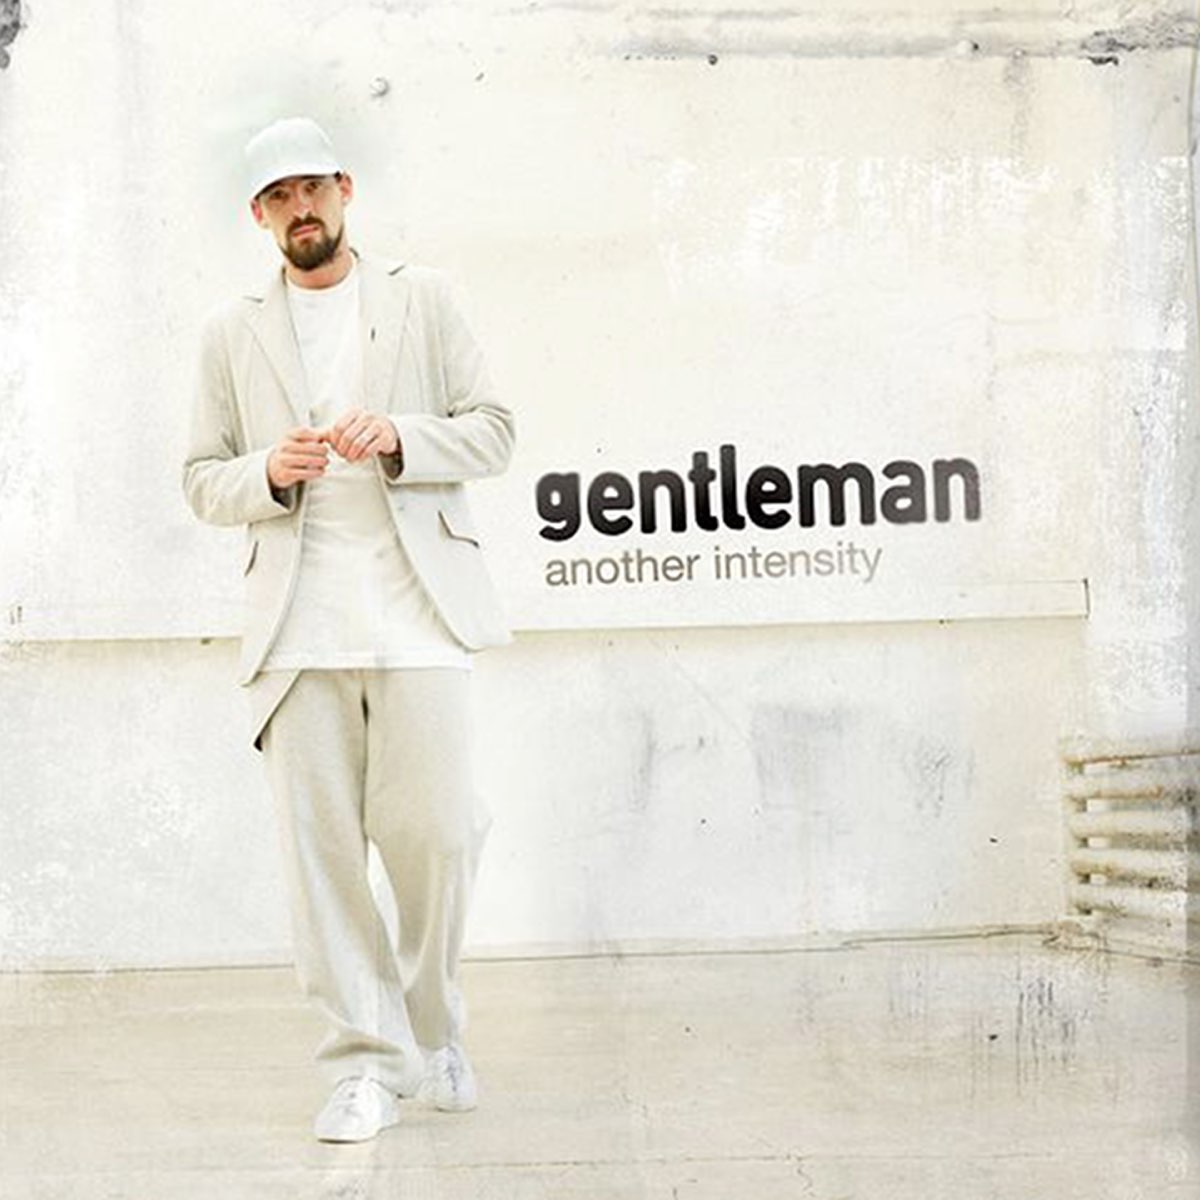 Слушать музыку джентльмен. Gentleman - 2007 - another Intencity. Обложка песни Gentleman. Песня Gentleman. Джентльмен песня.